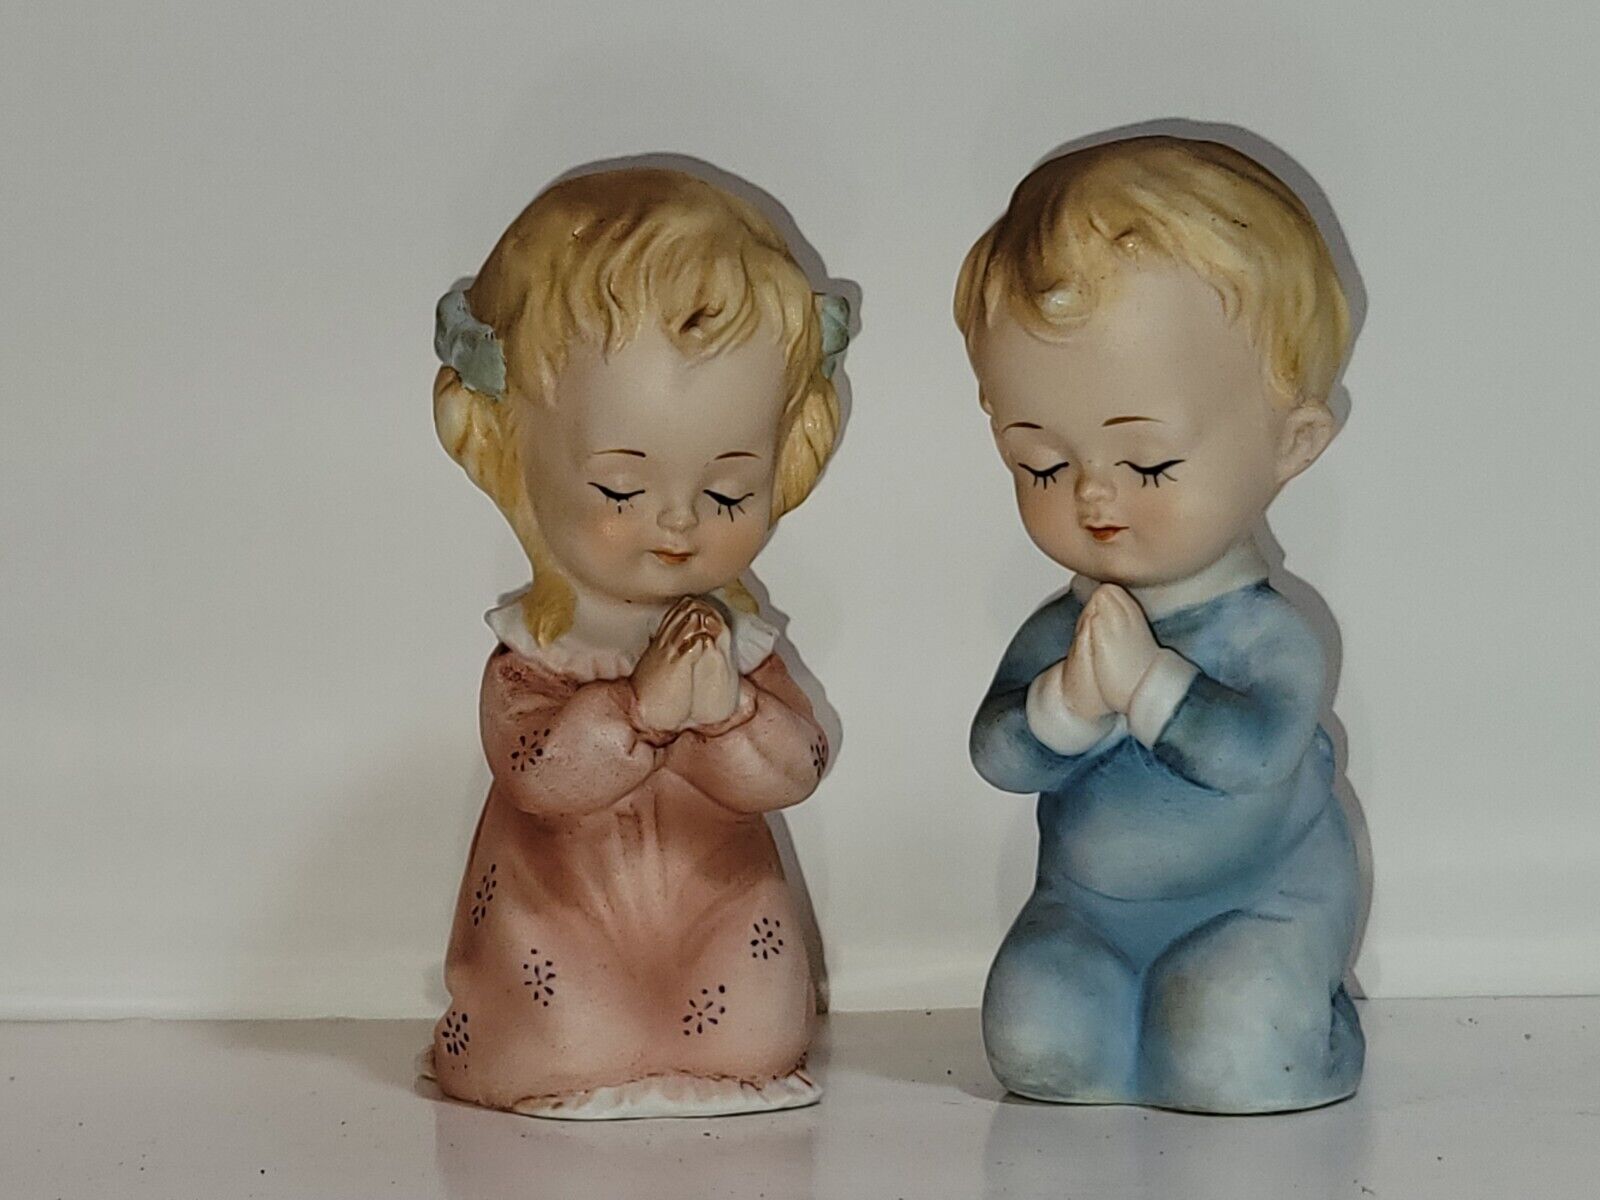 Lefton Japan Set of Praying Children Boy & Girl Pink & Blue Figurines VTG MCM 